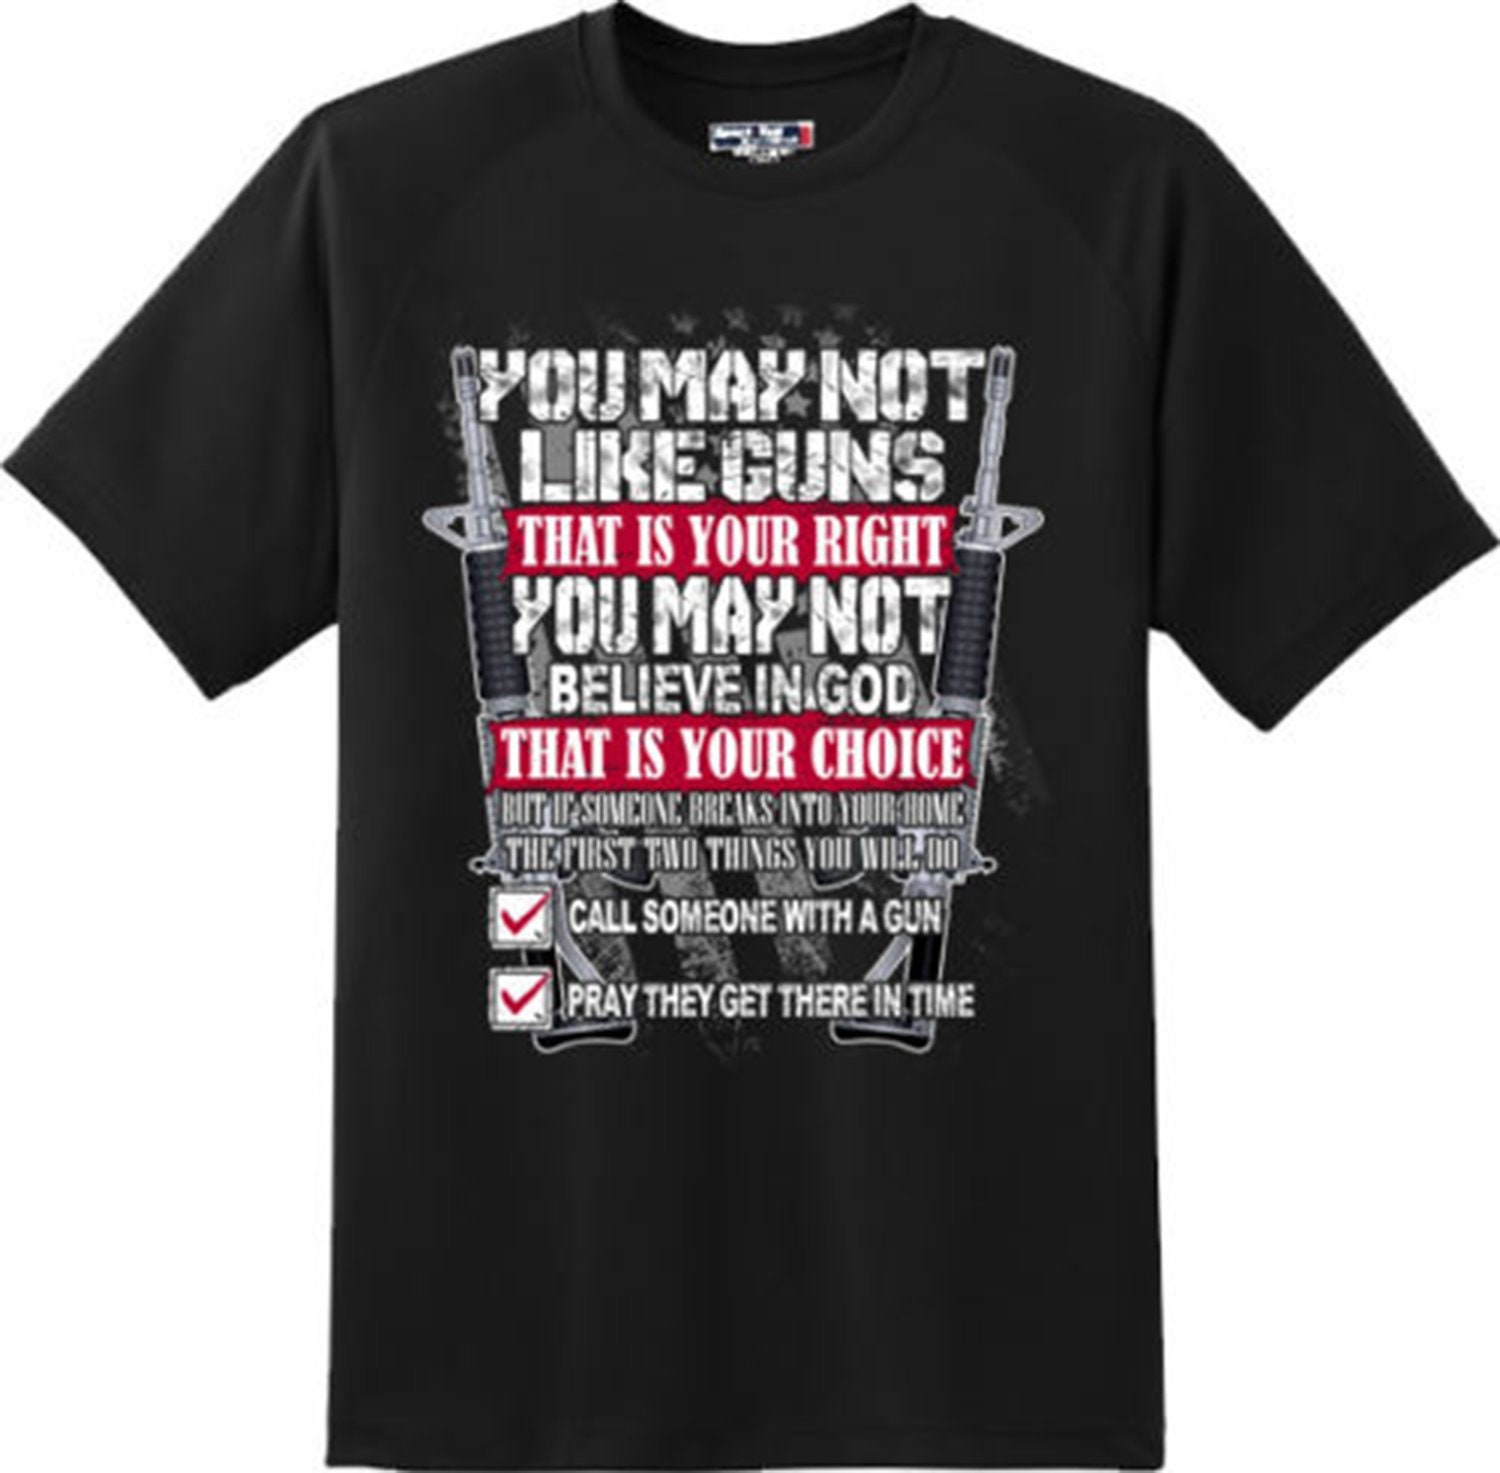 Second Amendment Gun Rights Trump Patriotic USA American Solider Gun T-shirt